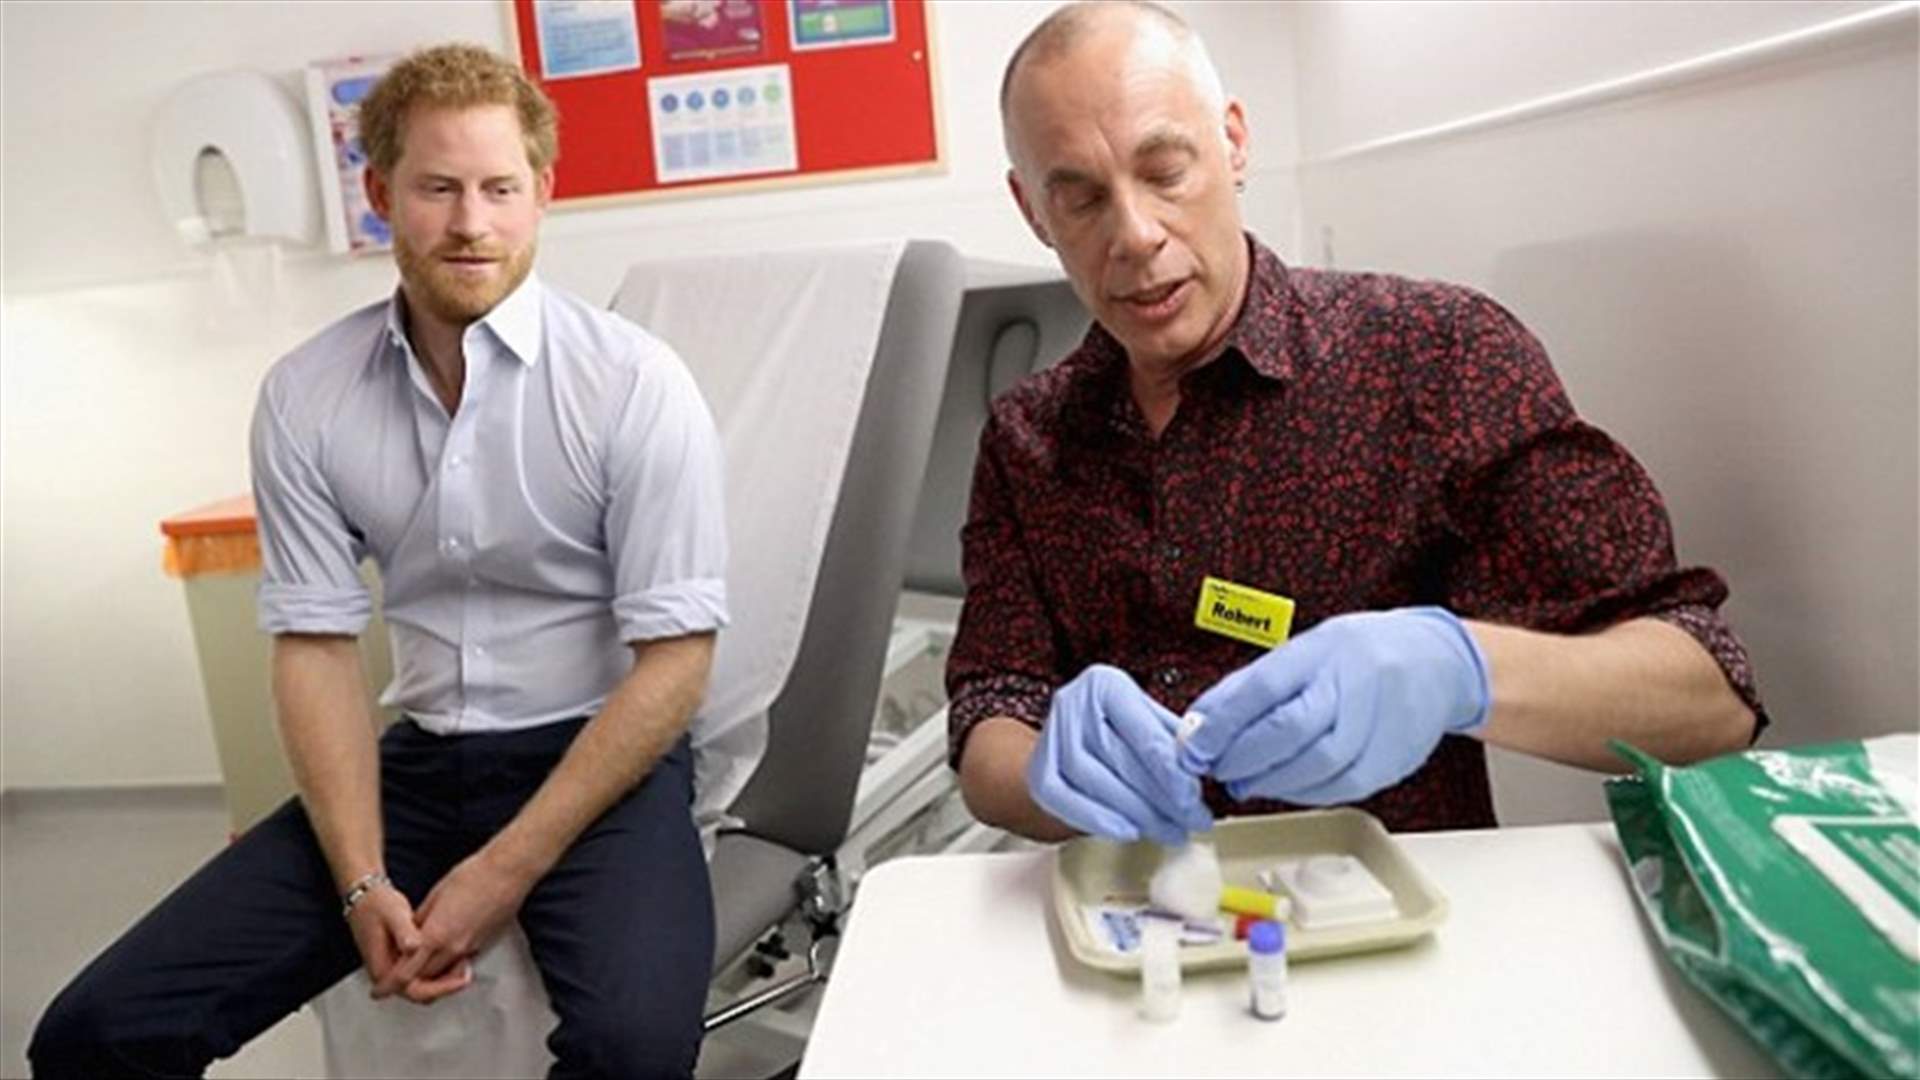 بالفيديو: الأمير هاري يخضع لفحص الـ HIV مباشرة عبر فيسبوك